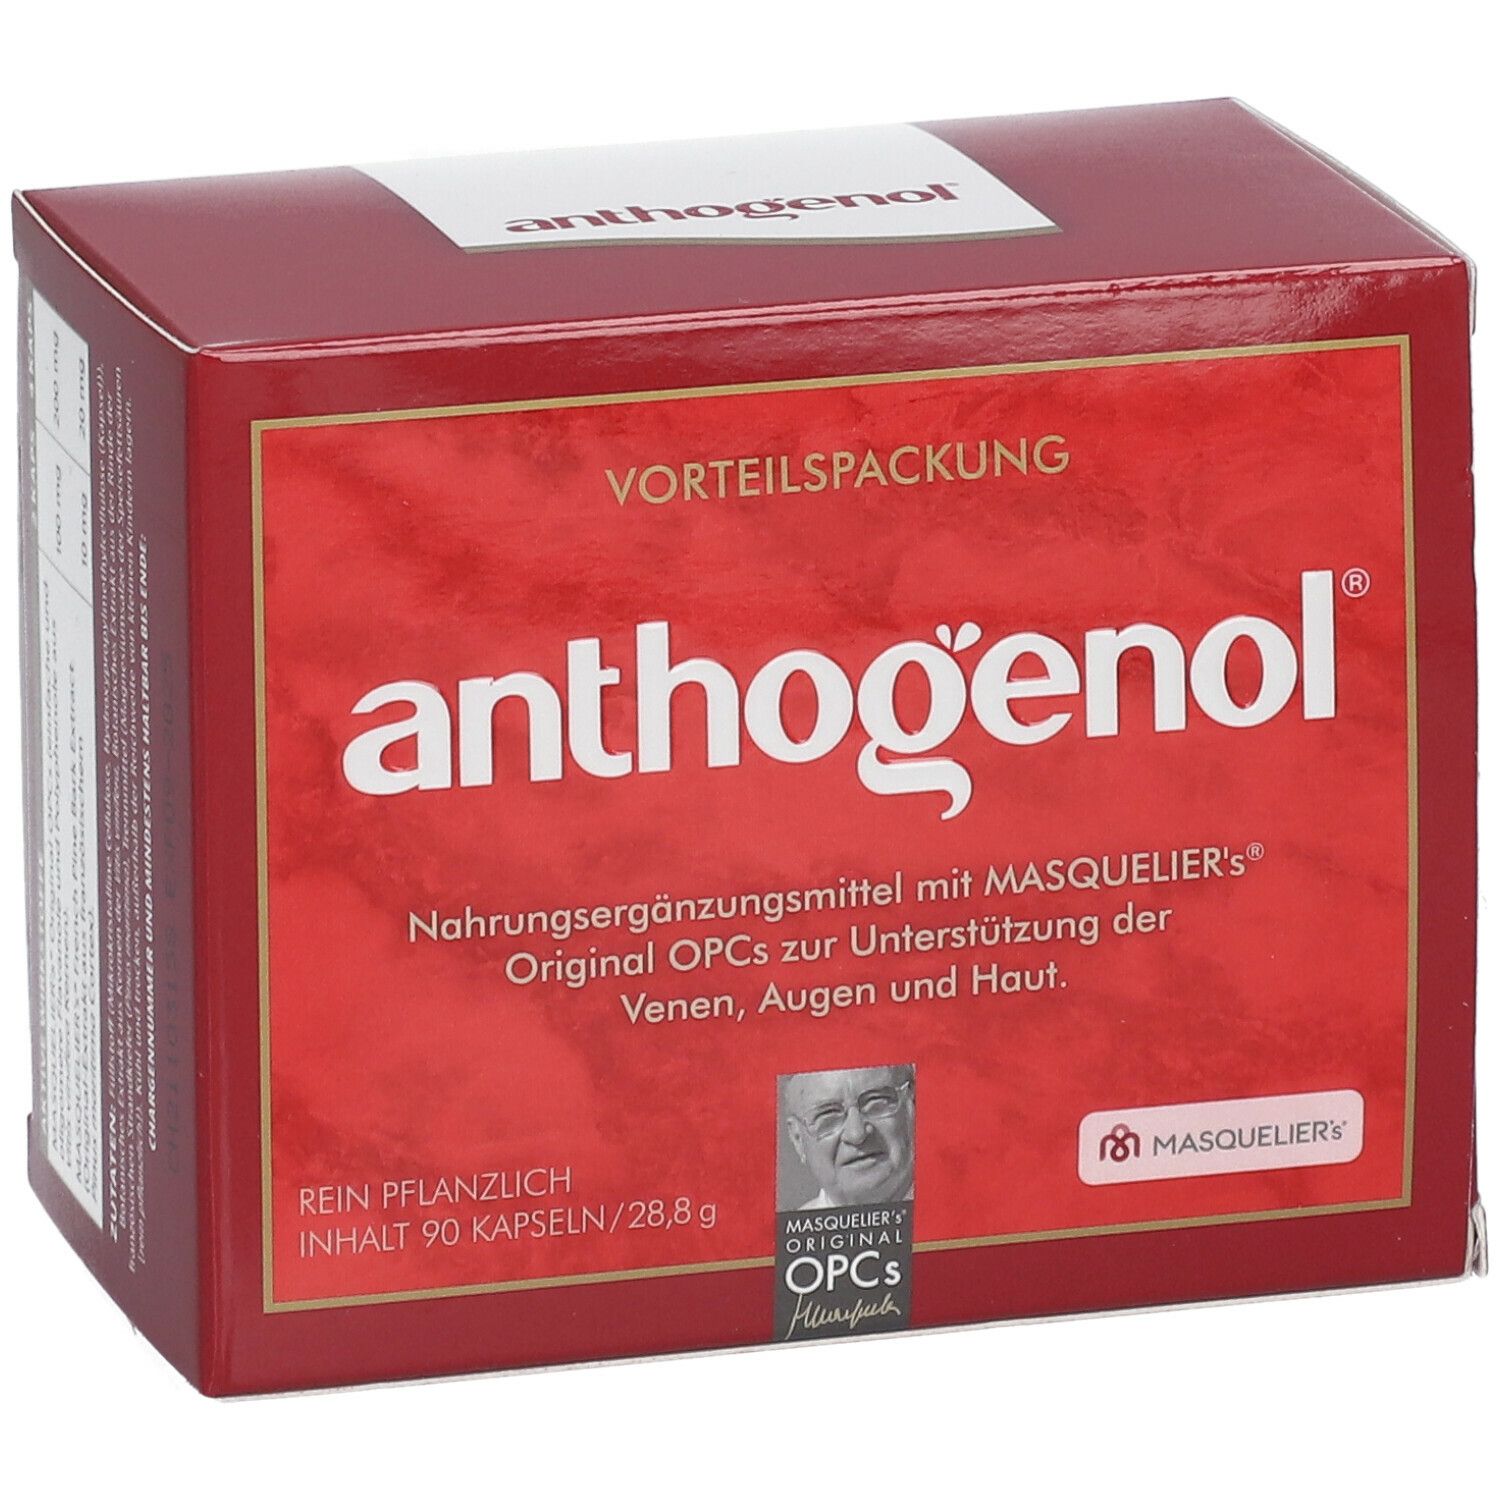 Anthogenol® MASQUELIERs® Original OPCs capsules